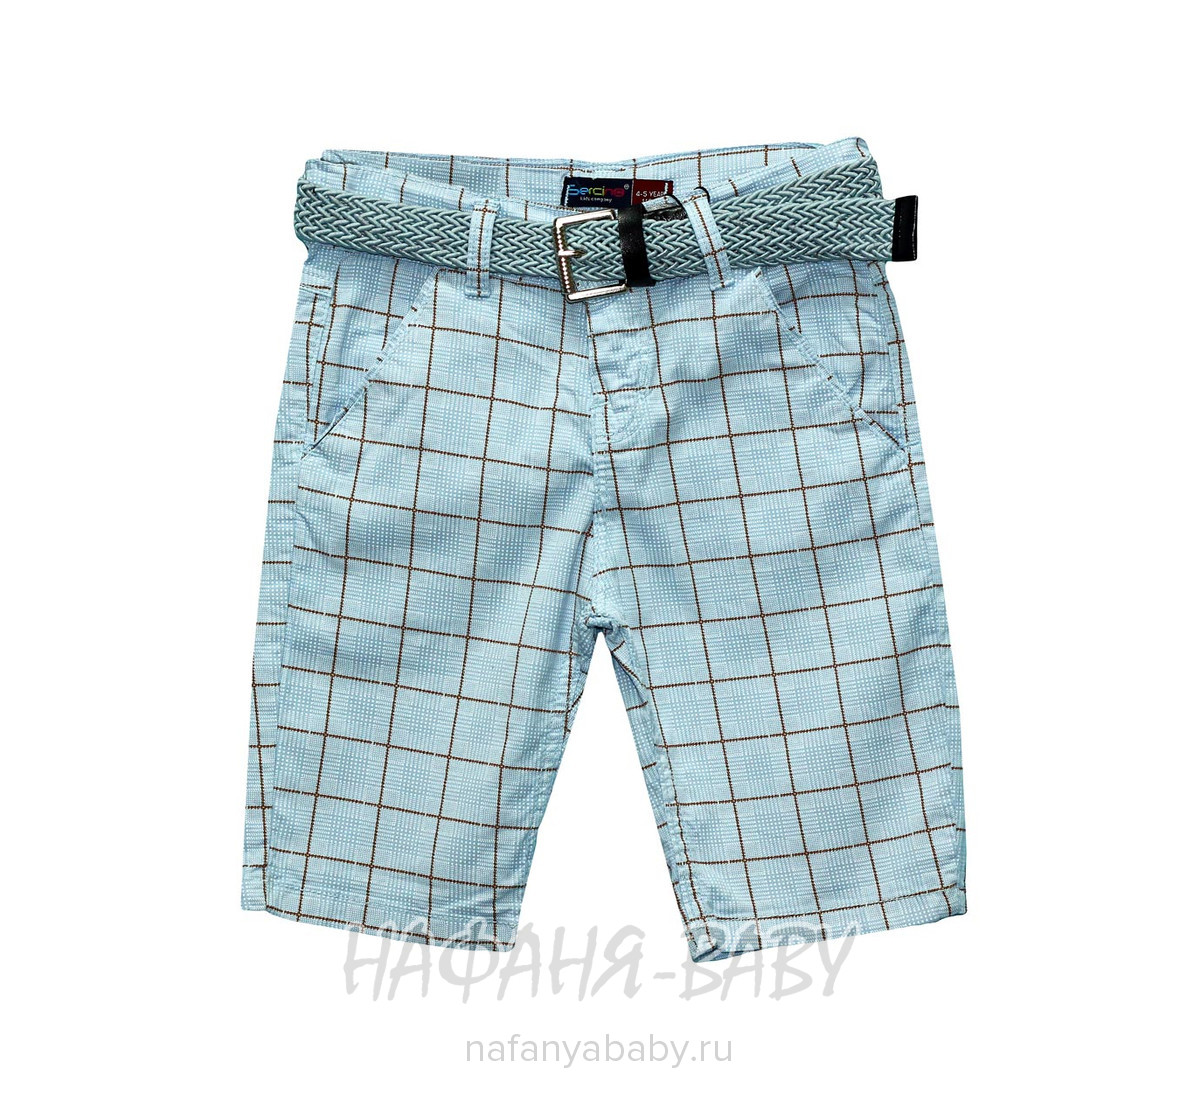 Подростковые шорты Sercino, купить в интернет магазине Нафаня. арт: 24743.